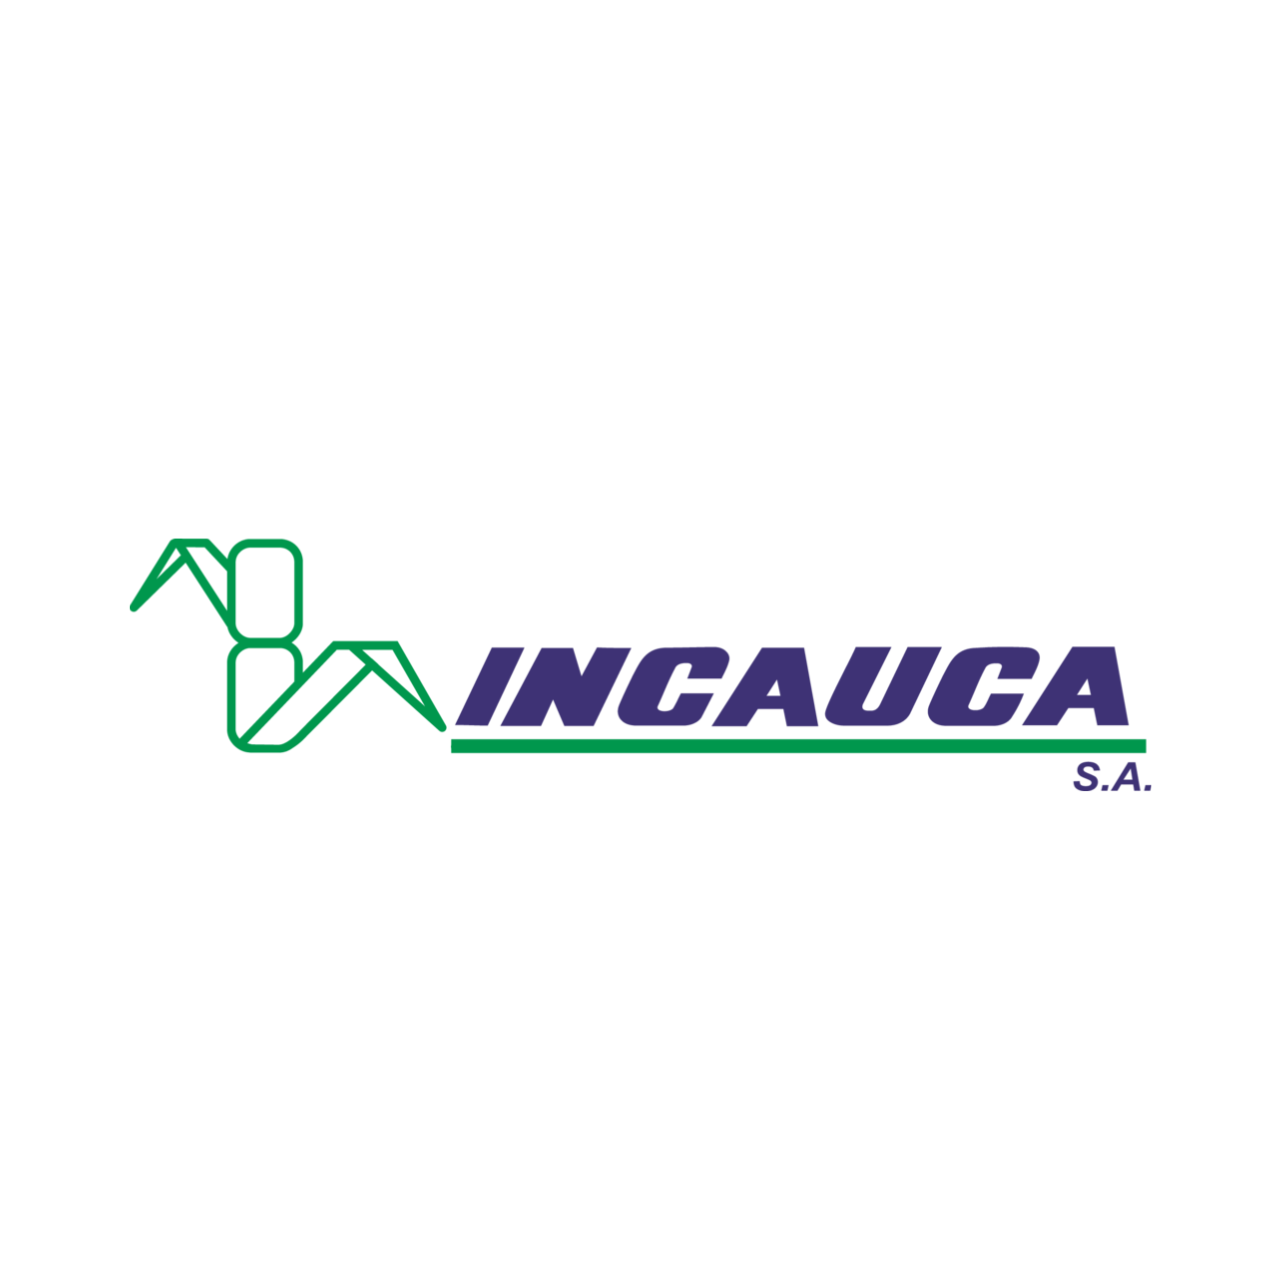 Logo incacuca 2